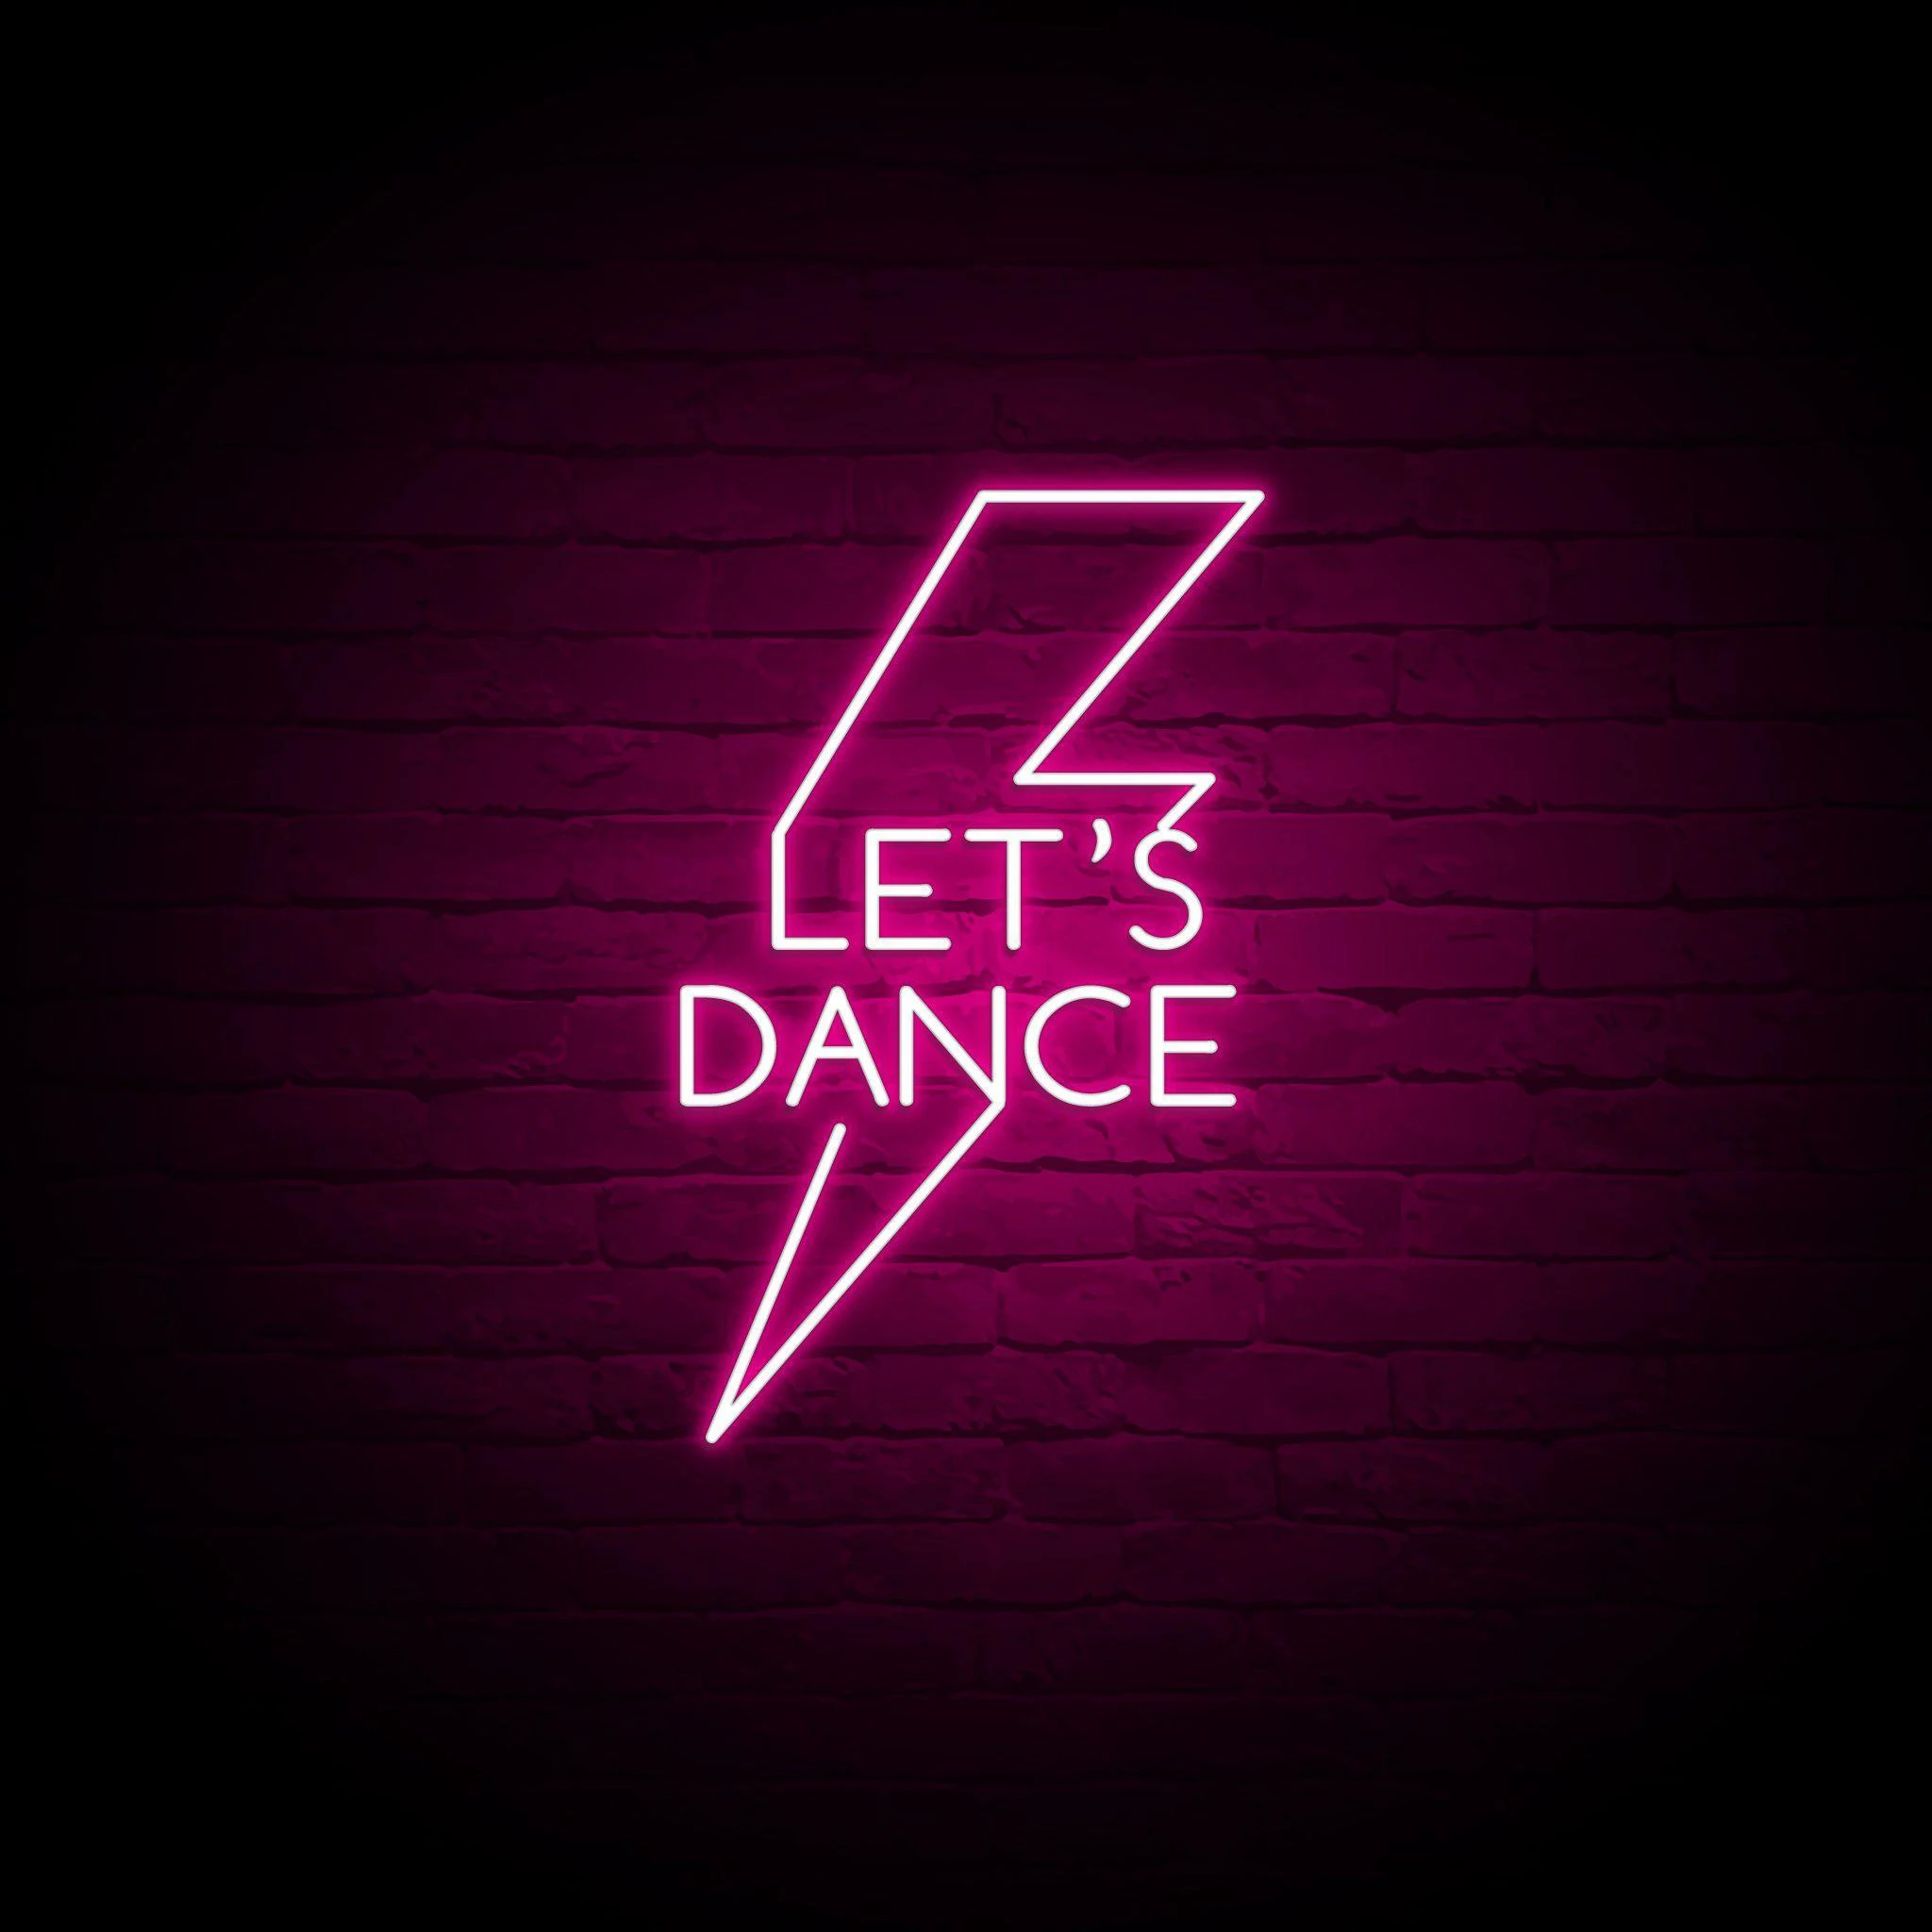 'LET'S DANCE' NEON SIGN